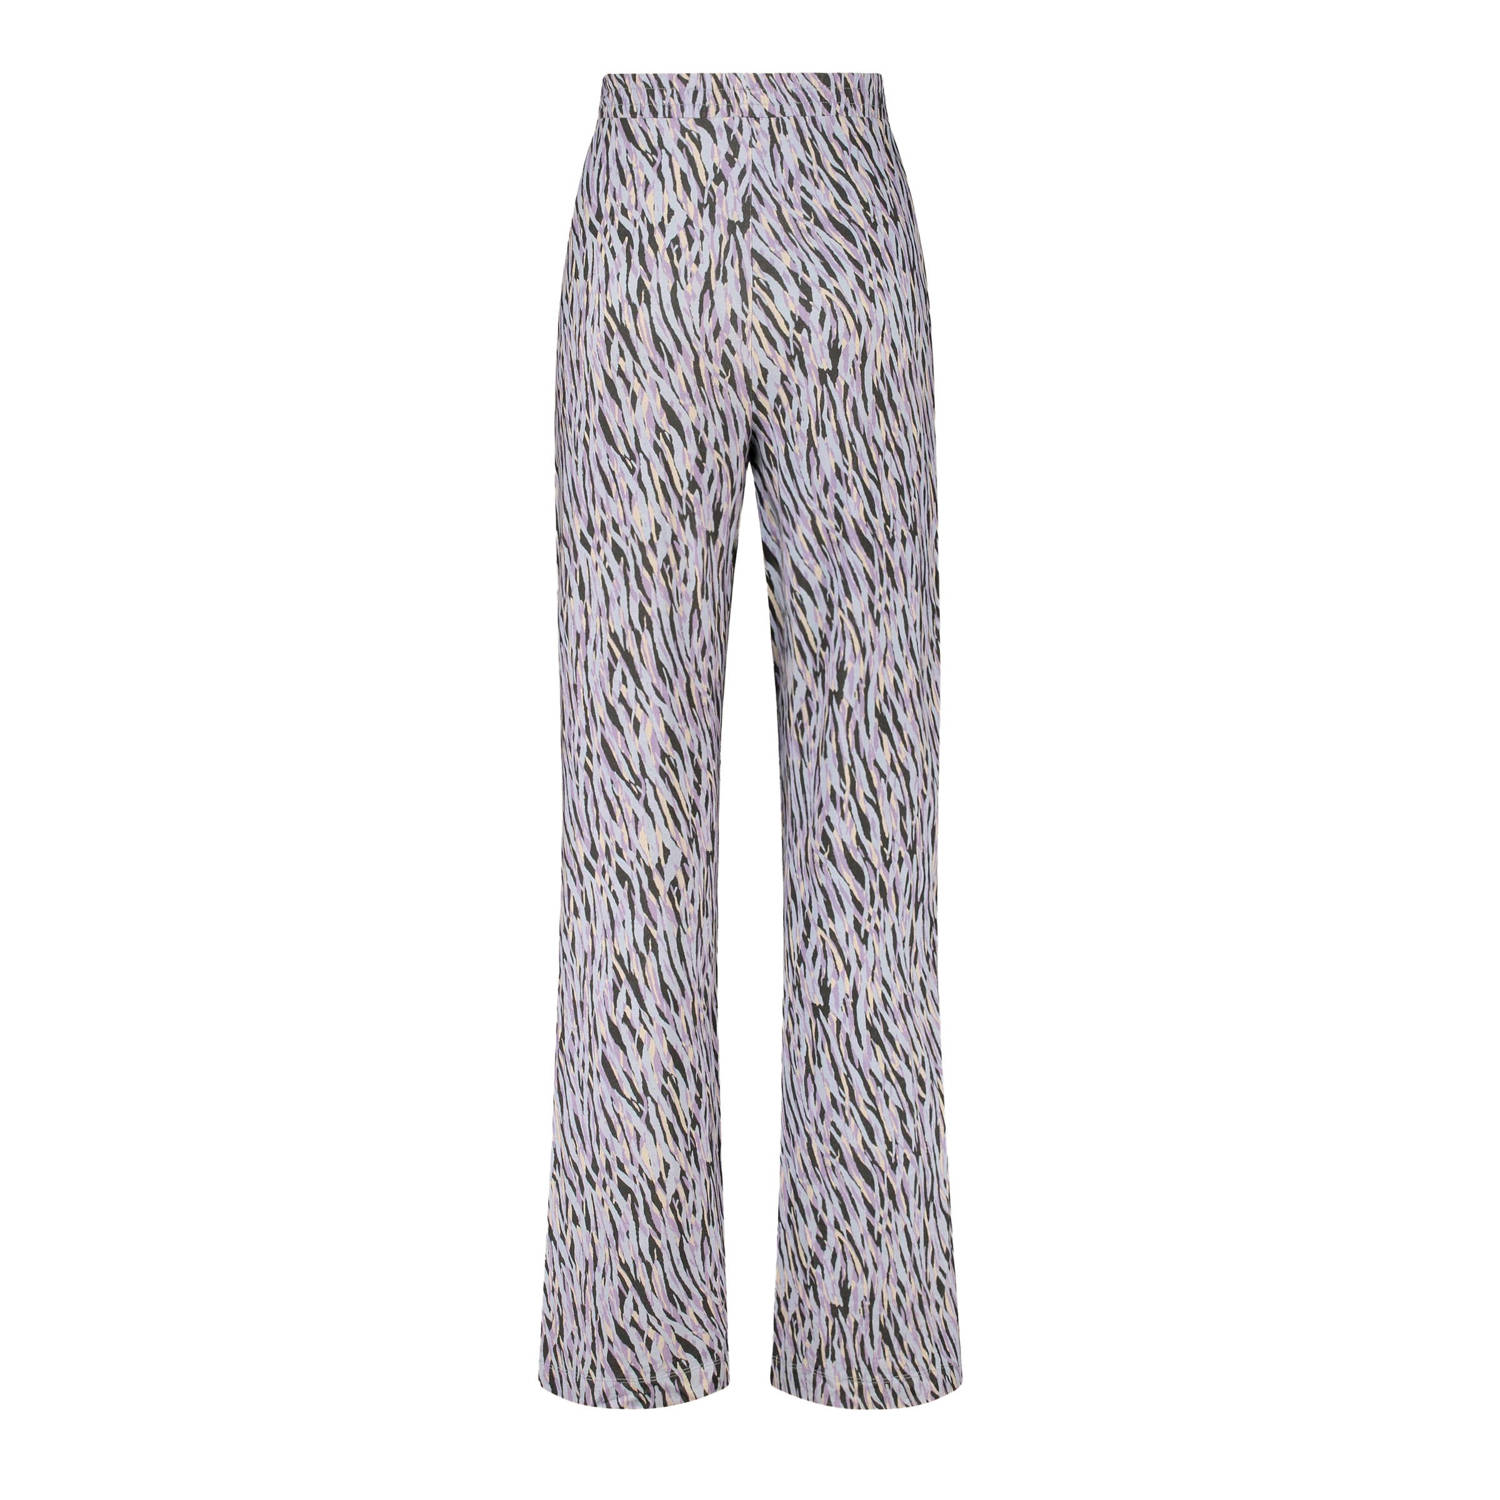 Expresso regular fit broek met zebraprint paars lichtblauw beige